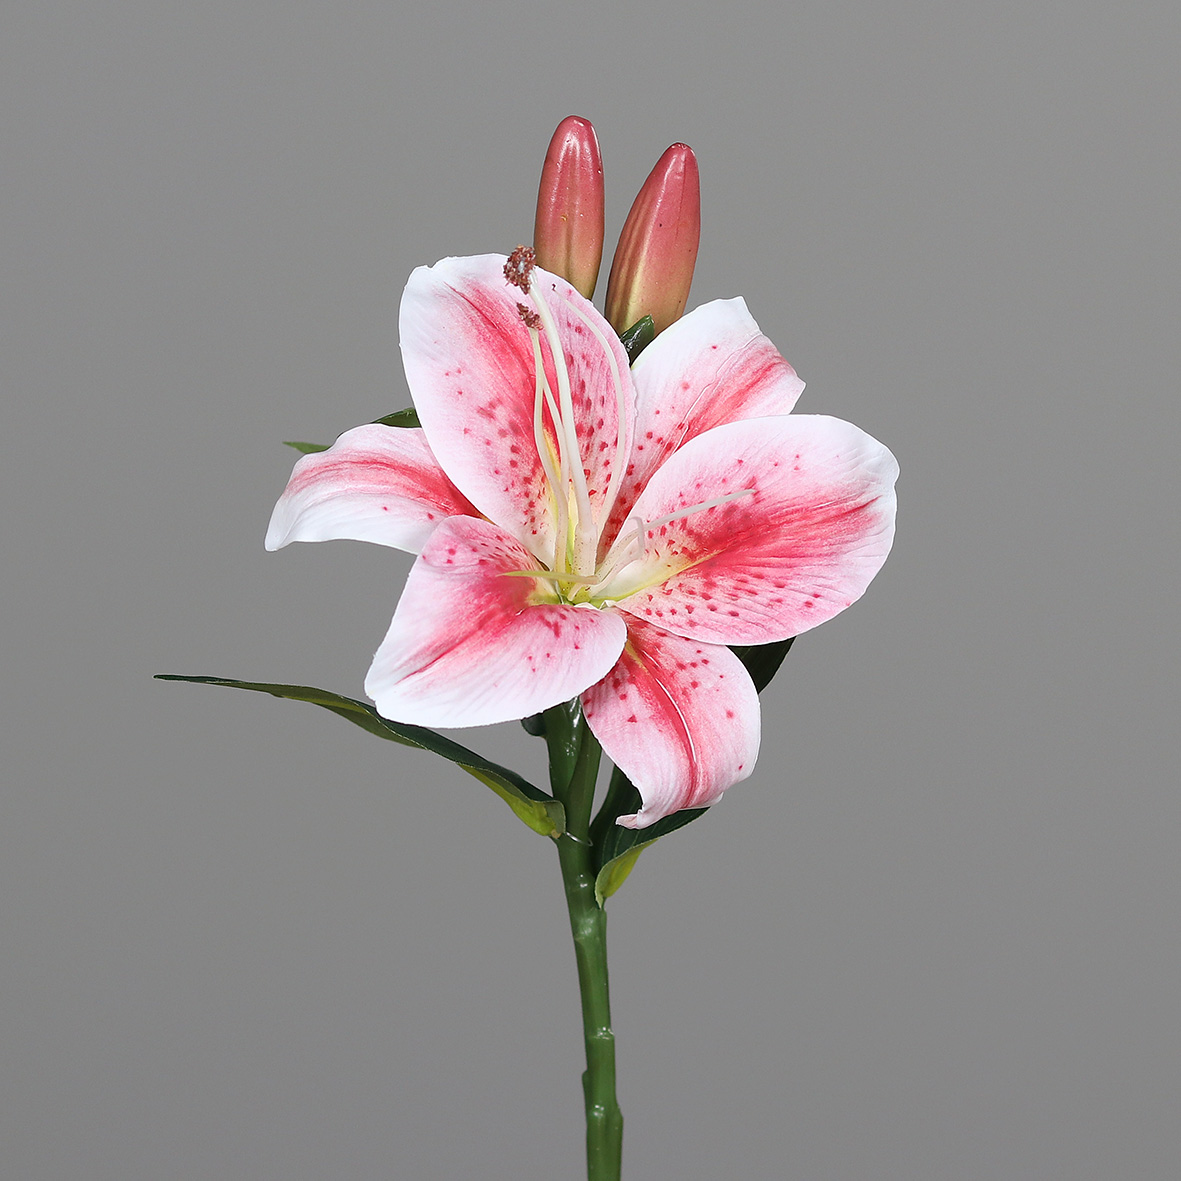 Lilie / Tigerlilie Real Touch 36cm rosa-pink DP Kunstblumen künstliche Blume künstlicher Lilienzweig